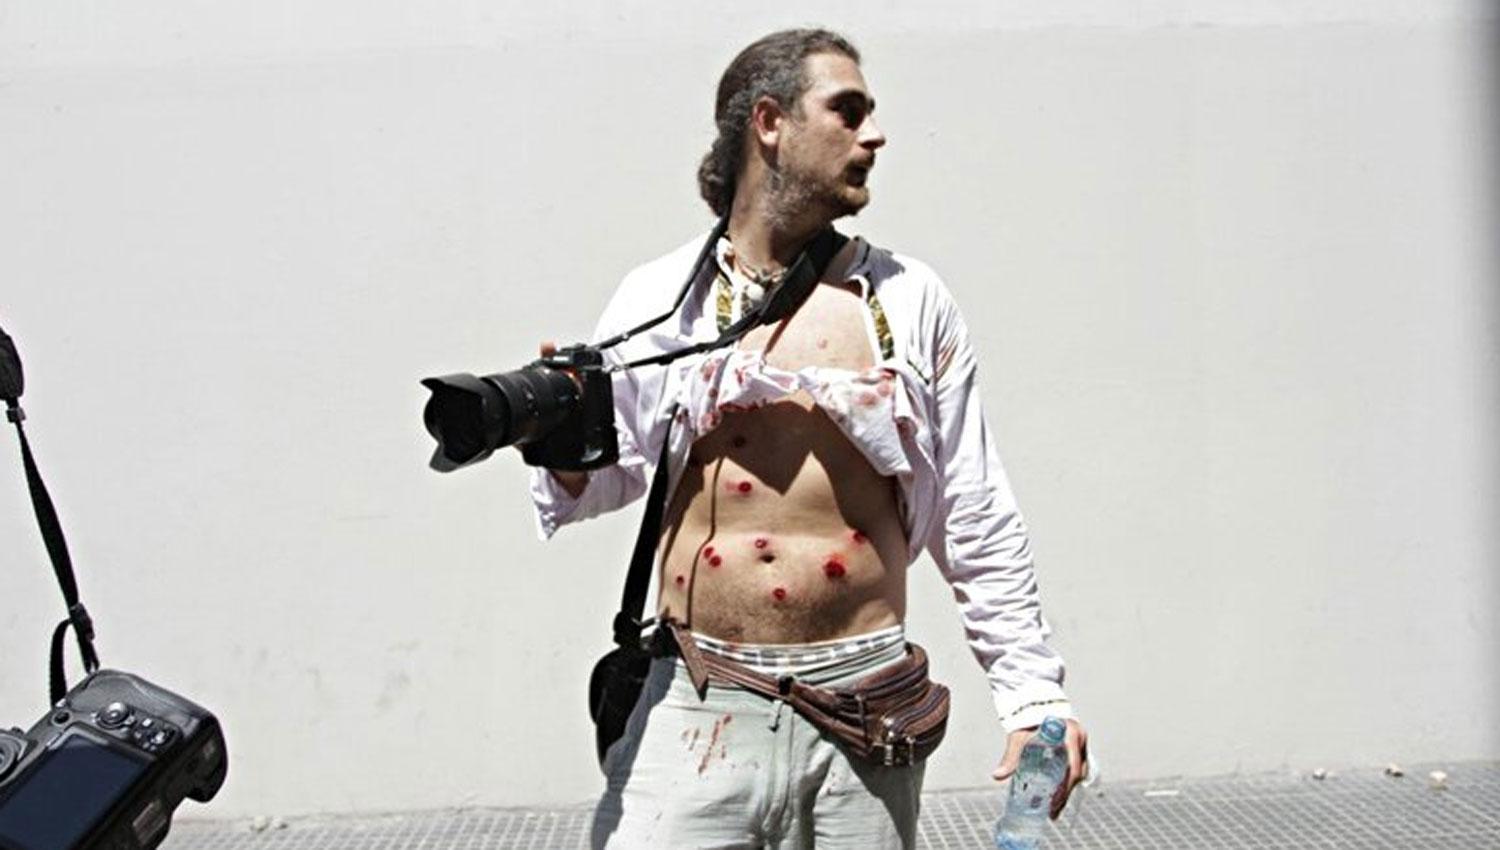 BALAS DE GOMA. Piovano fue atacado mientras cubría las manifestaciones en la plaza del Congreso. FOTO TOMADA DE TWITTER.COM/CELS_ARGENTINA